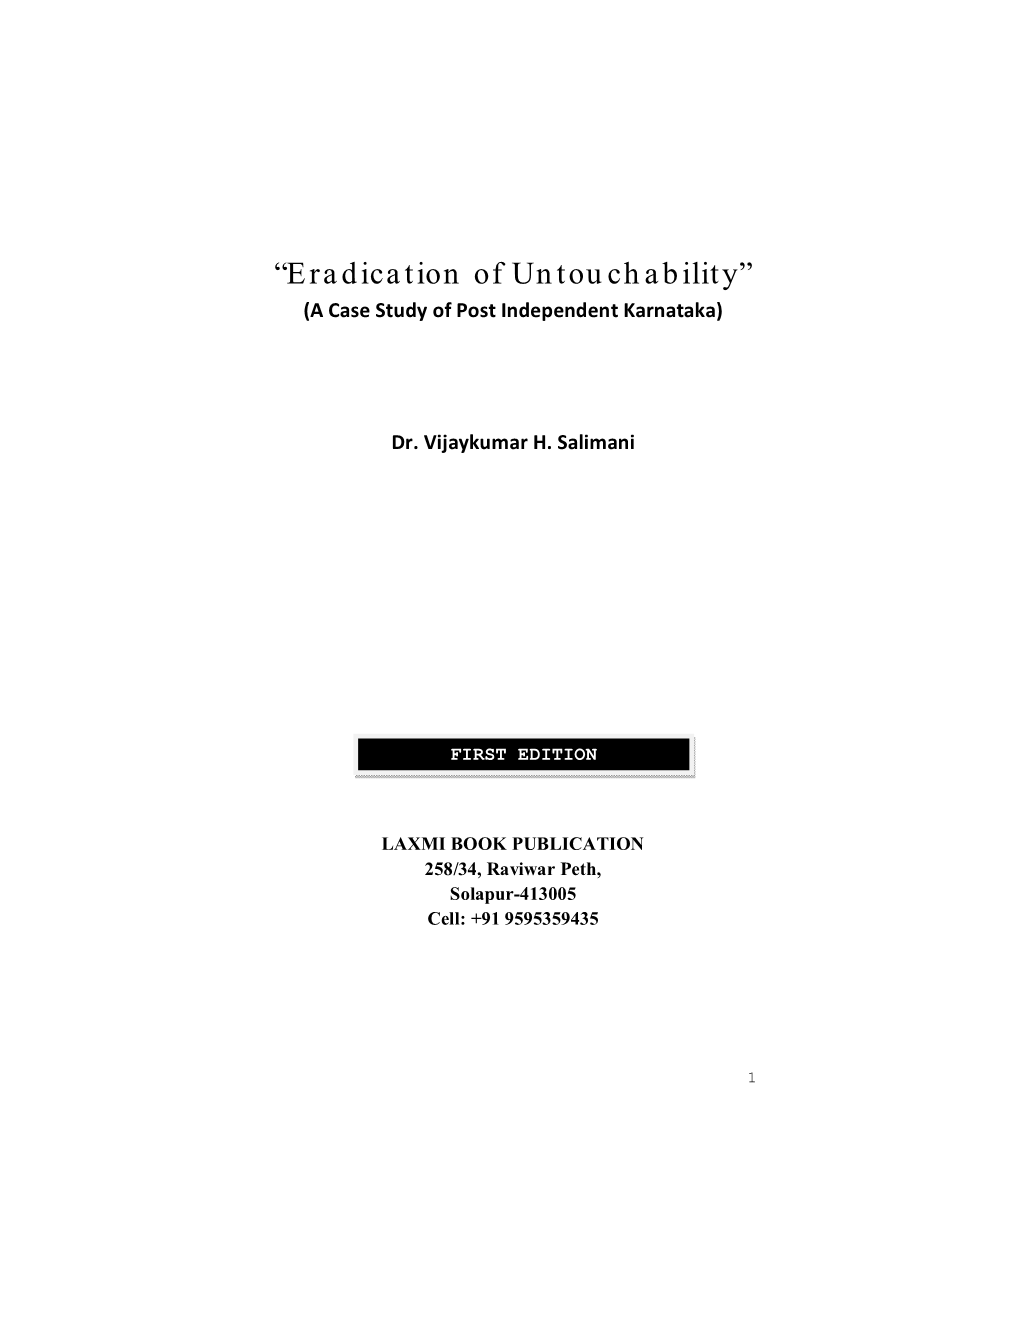 “Eradication of Untouchability” (A Case Study of Post Independent Karnataka)